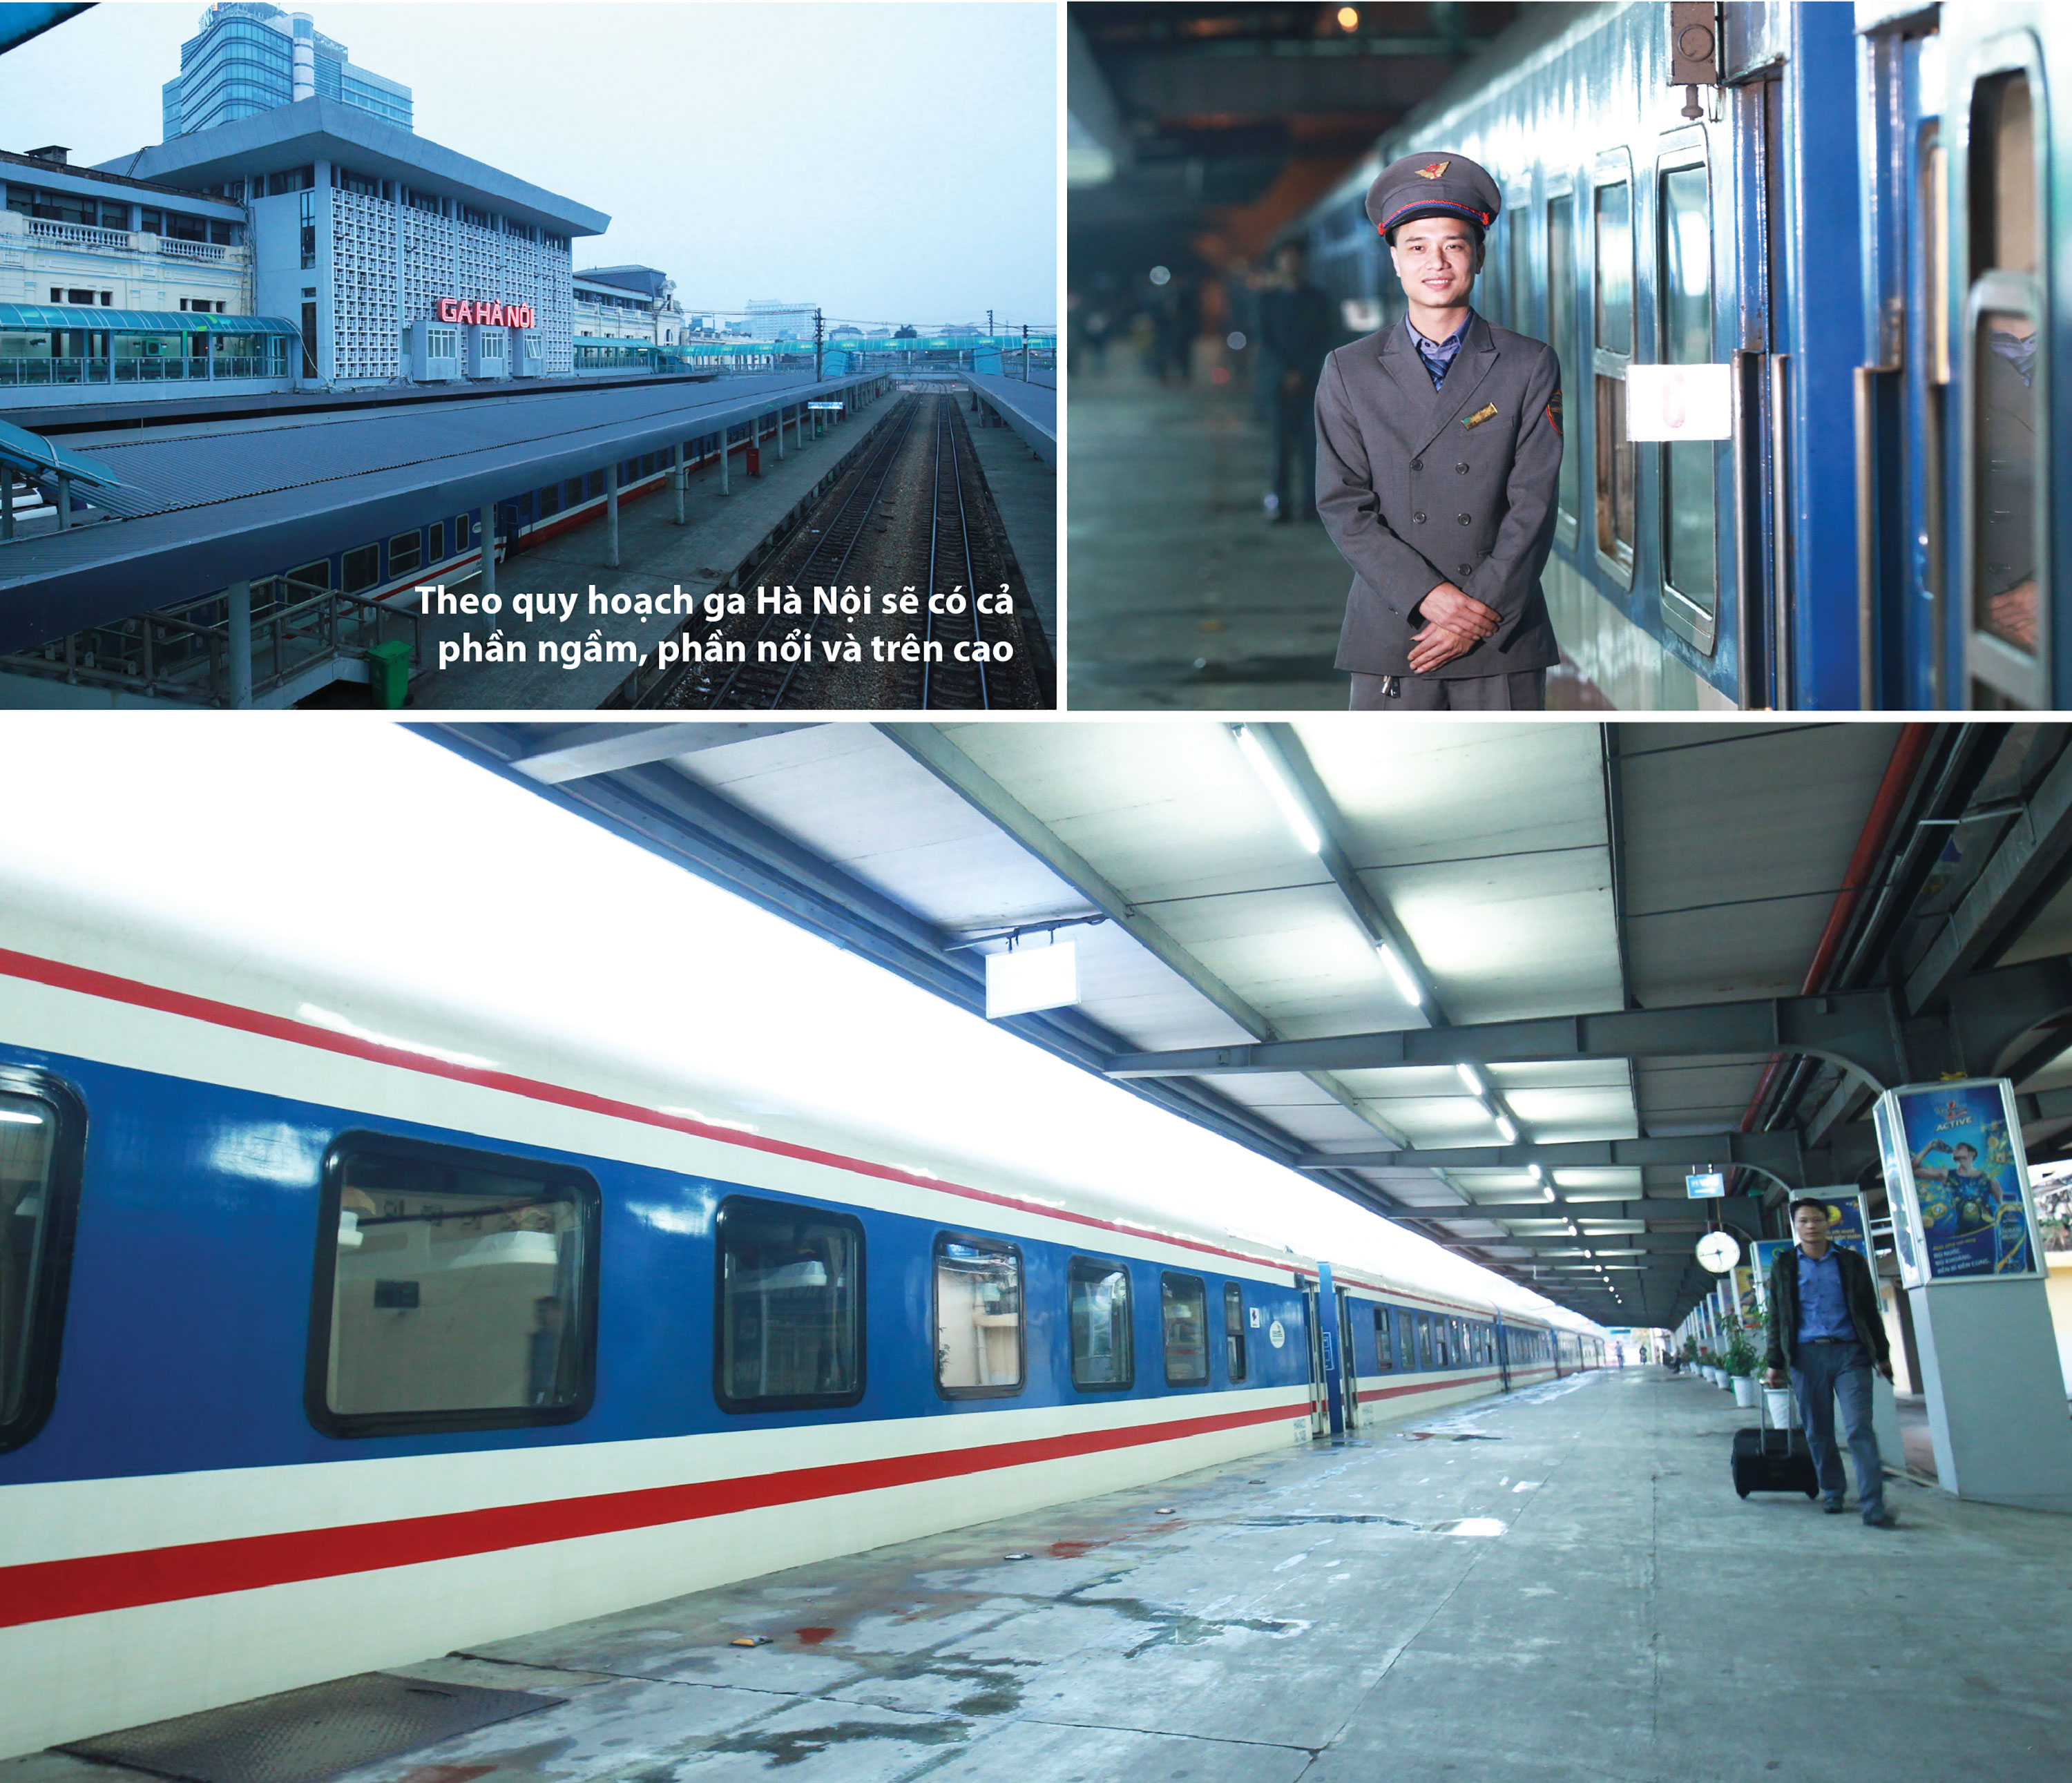 Di dời các chuyến tàu khỏi ga Hà Nội: tăng tính kết nối, giảm ùn tắc - Ảnh 5